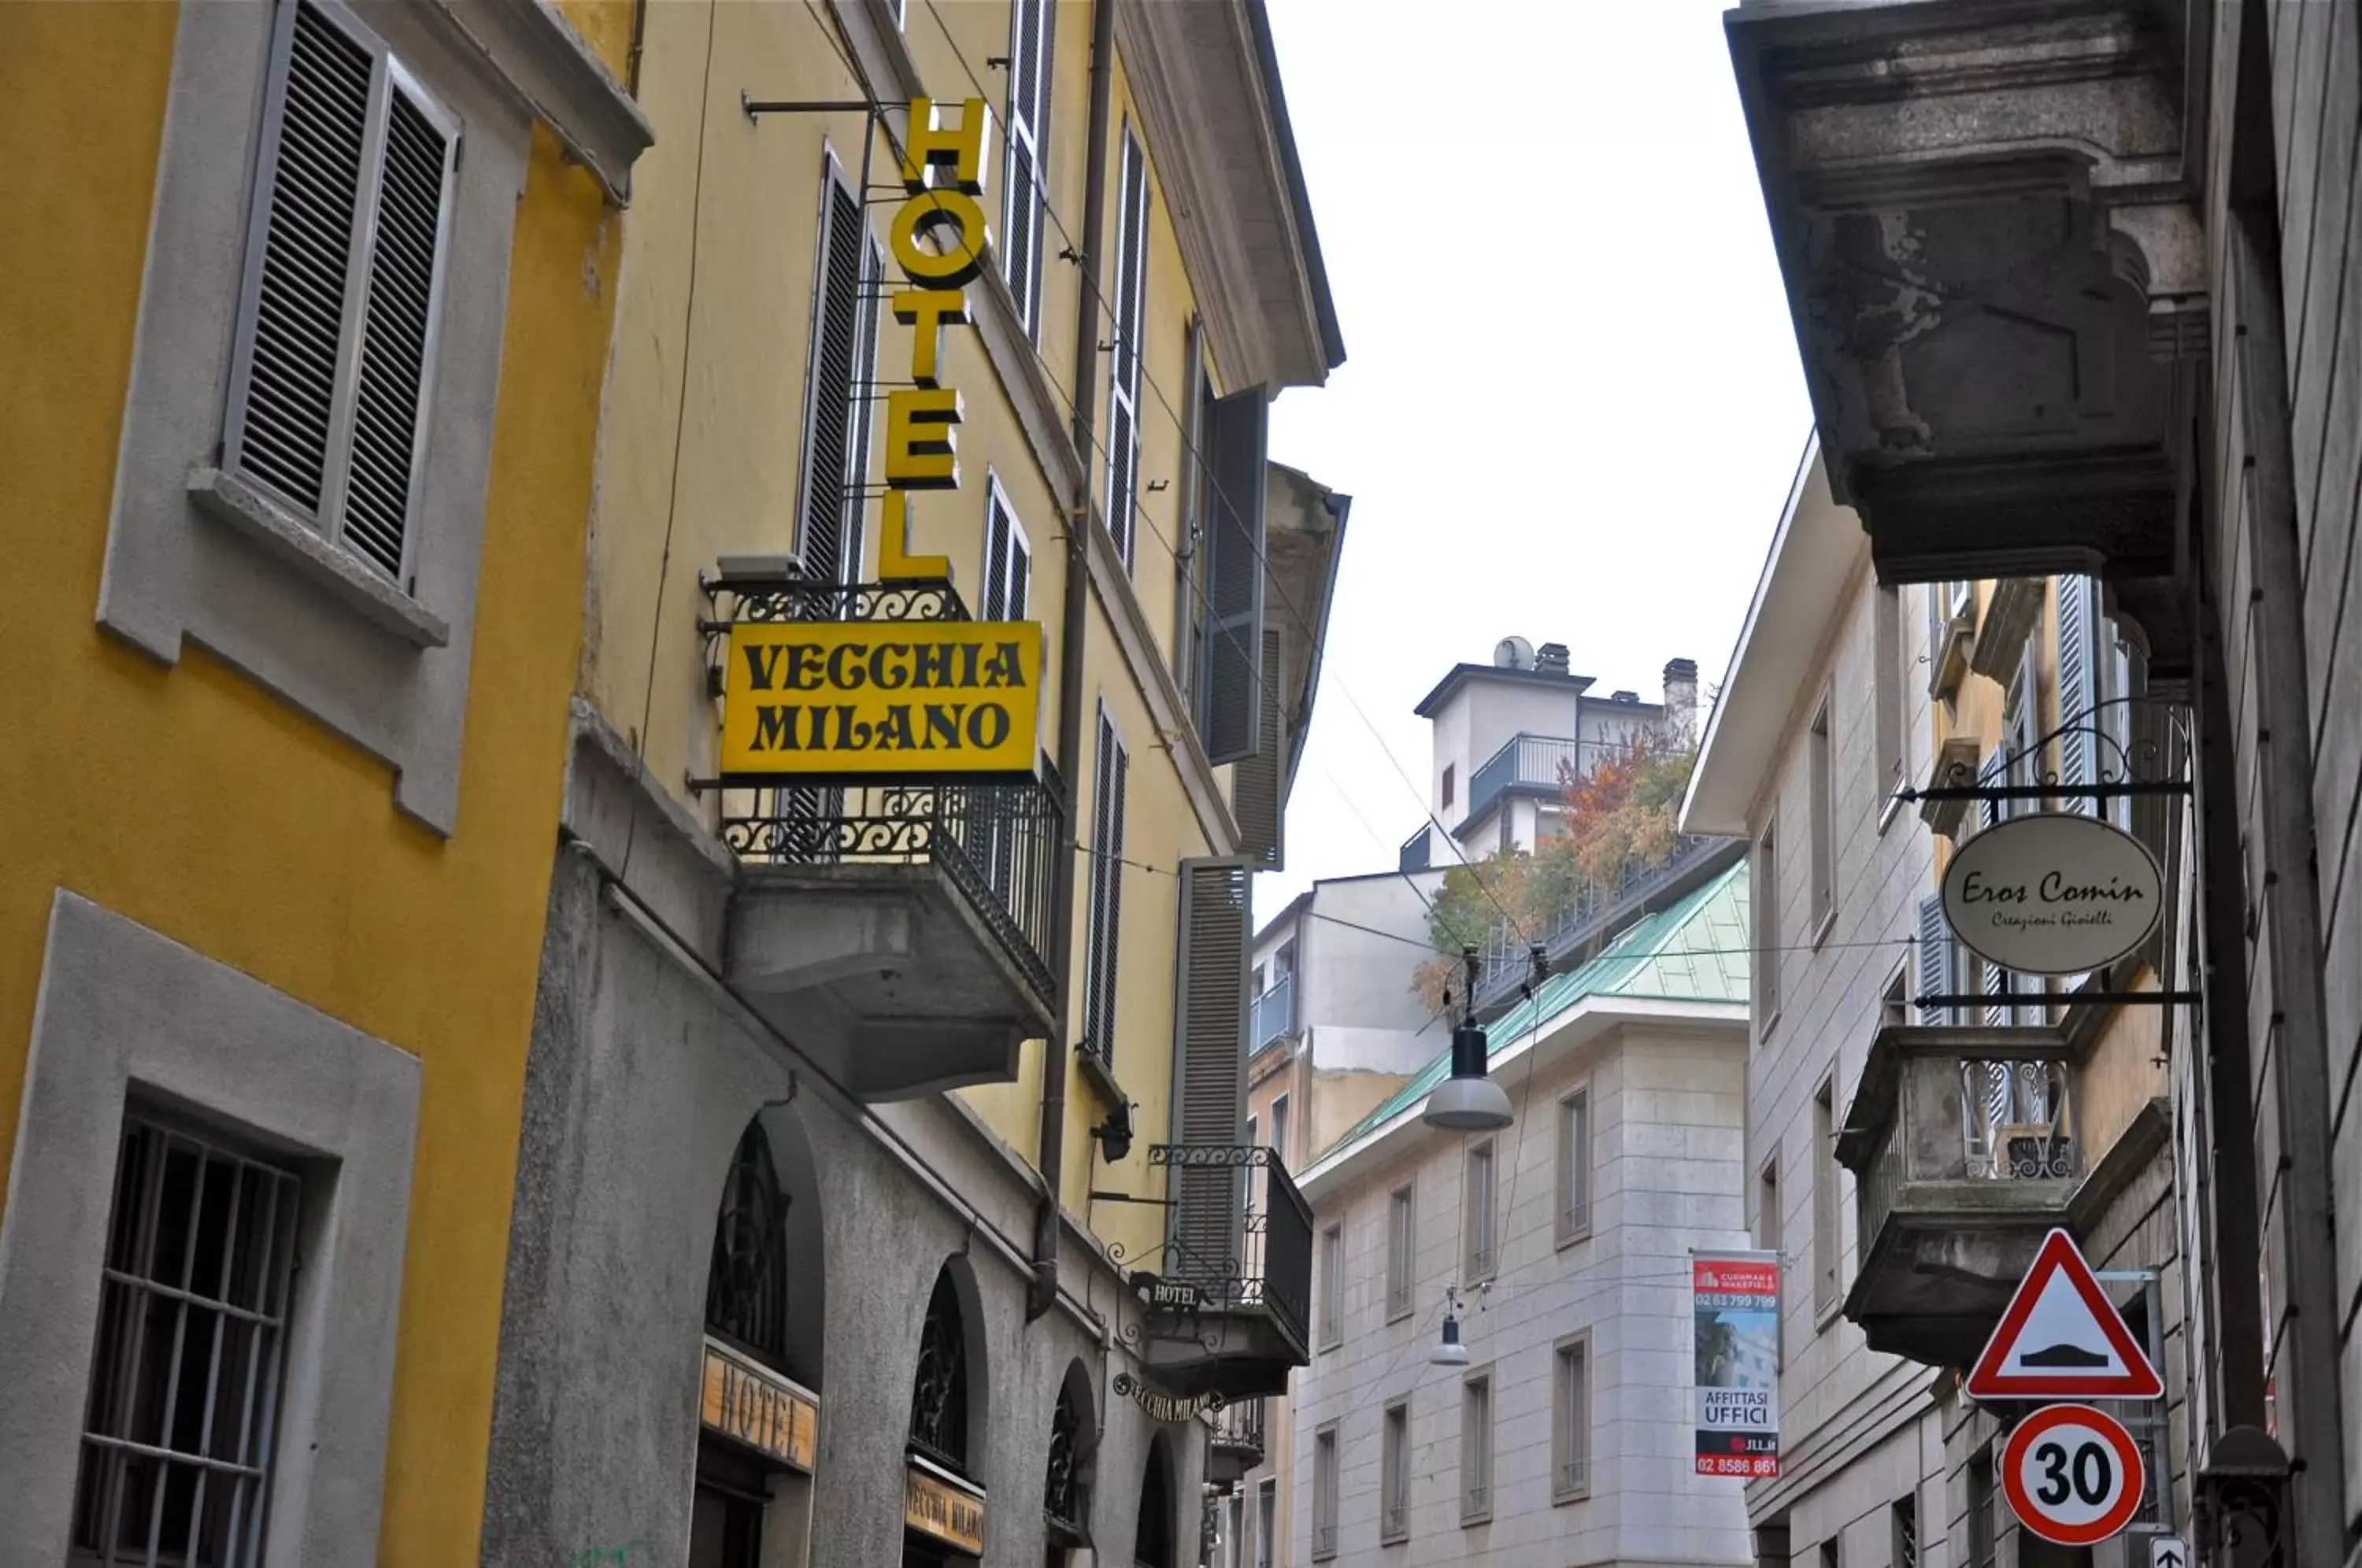 Facade/entrance in Hotel Vecchia Milano